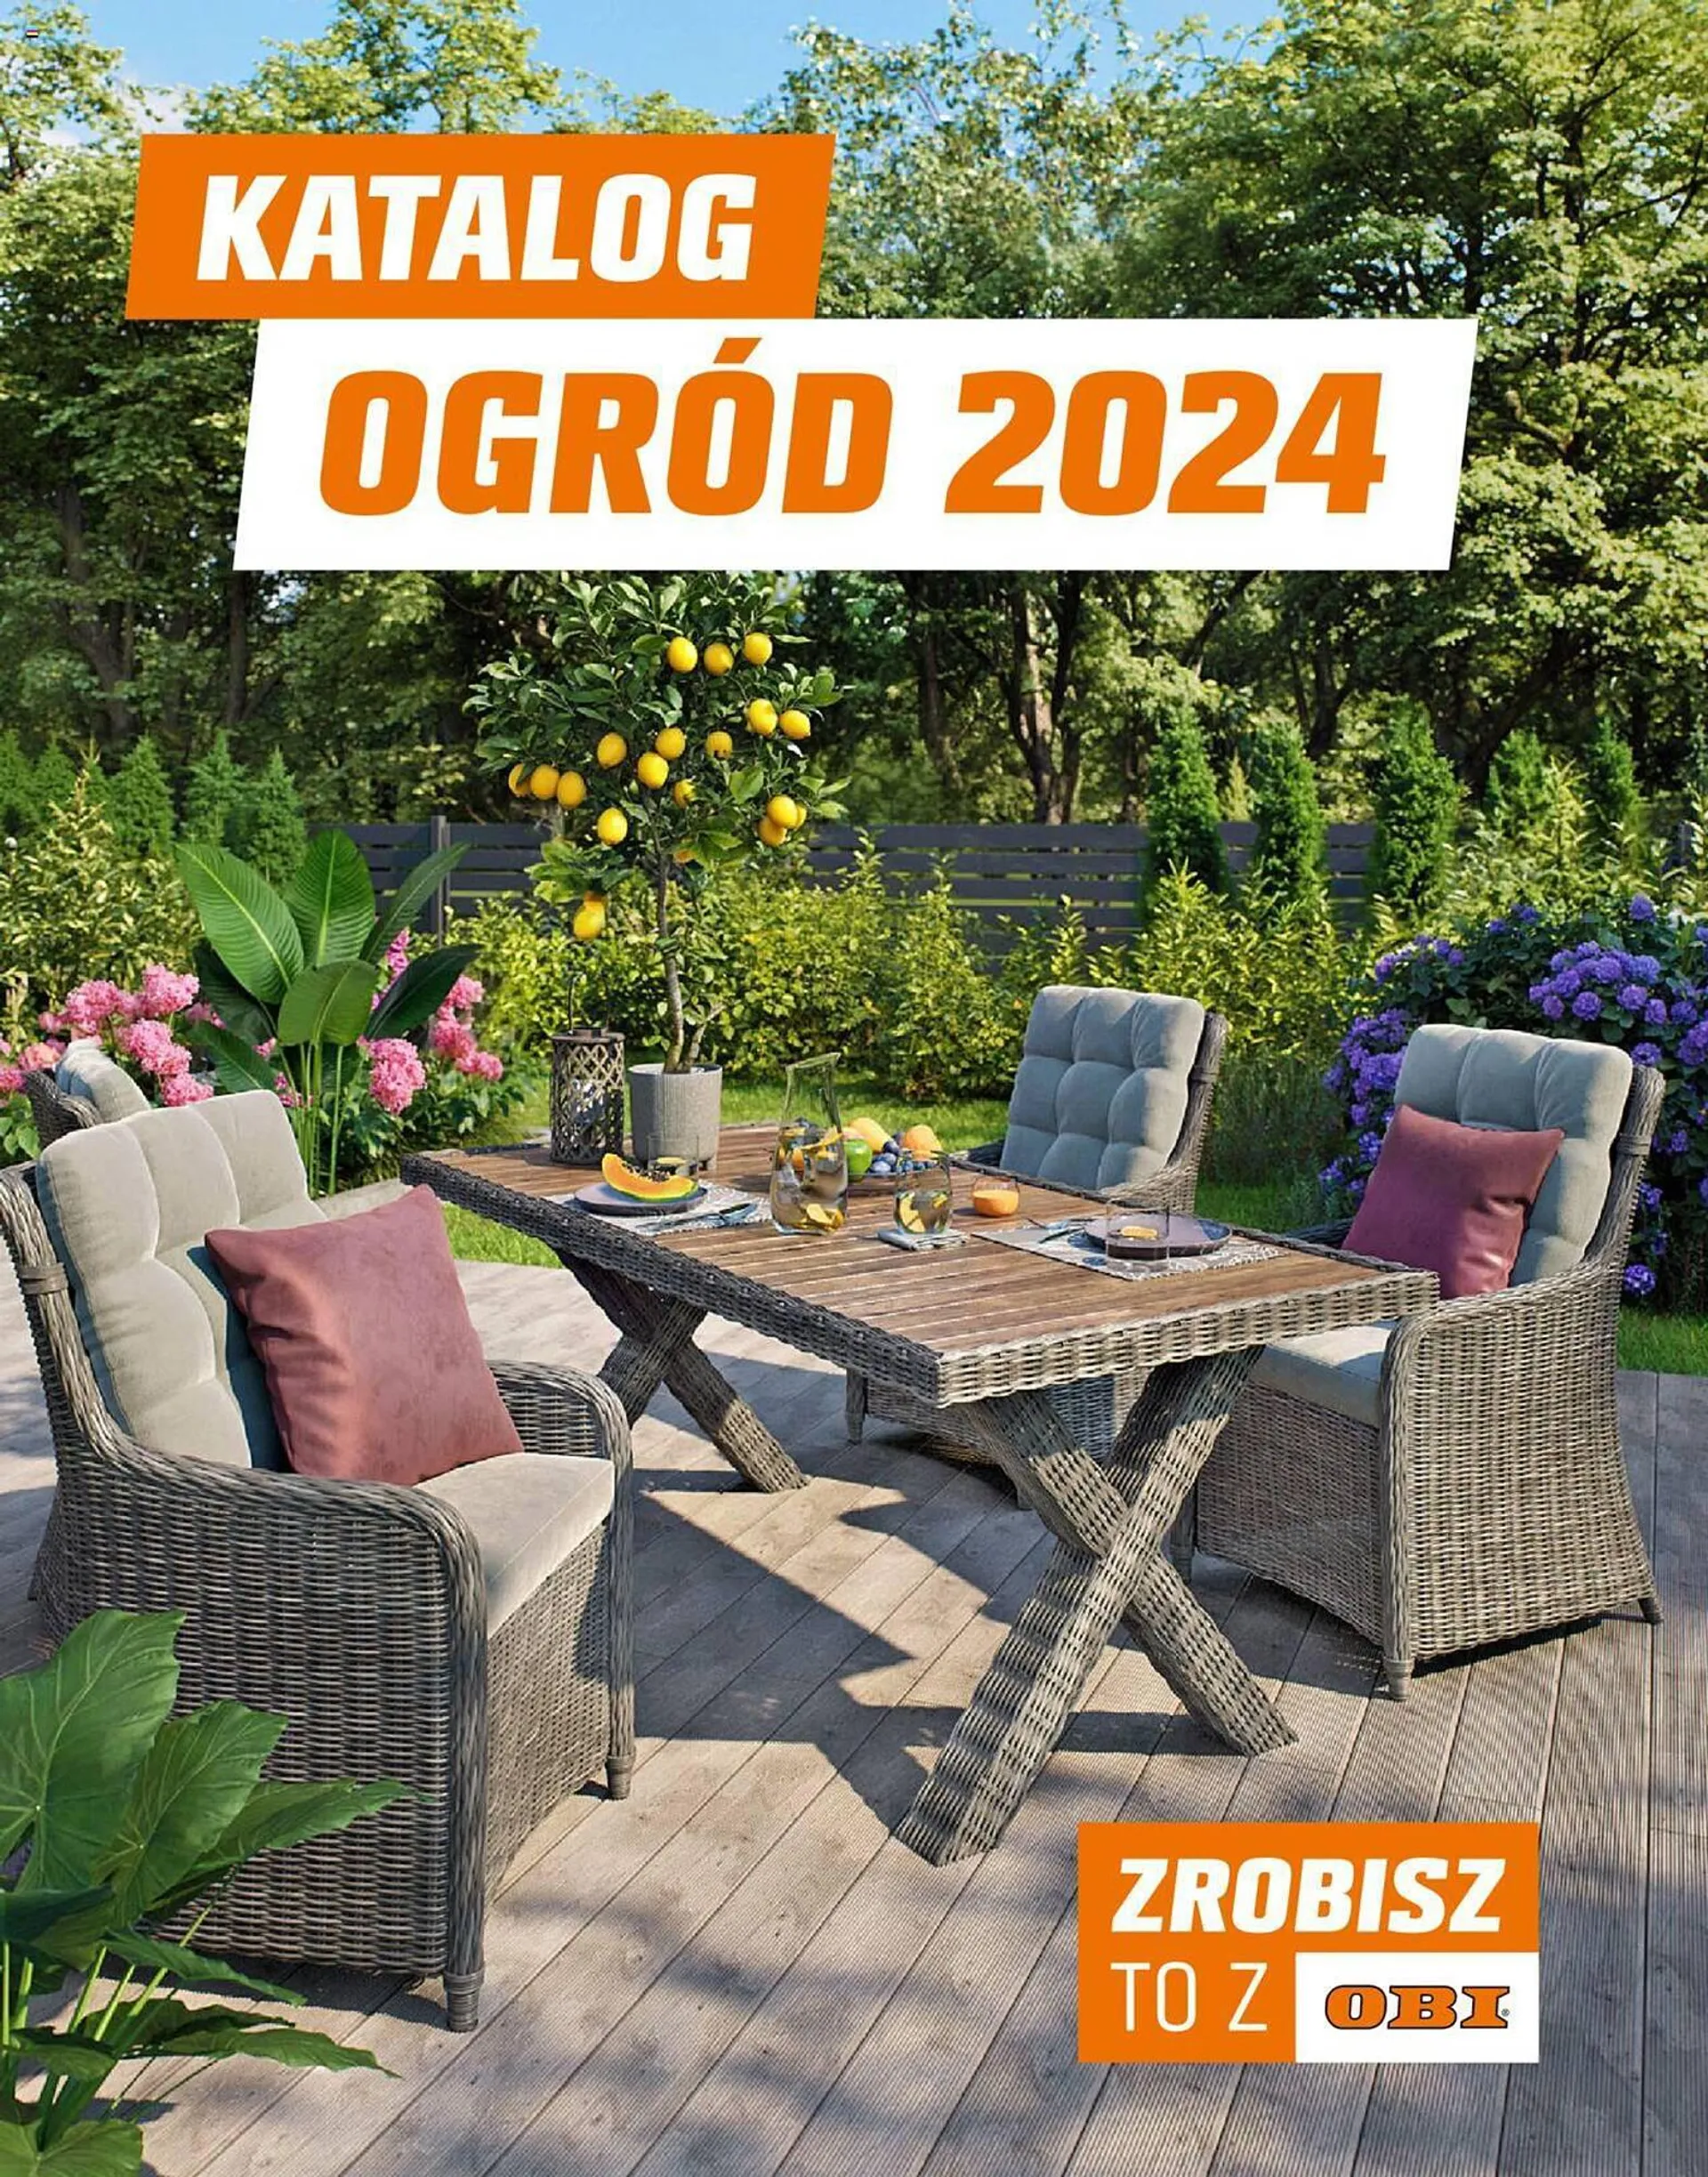 OBI Katalog 2024 - Ogród - 11 marca 31 maja 2024